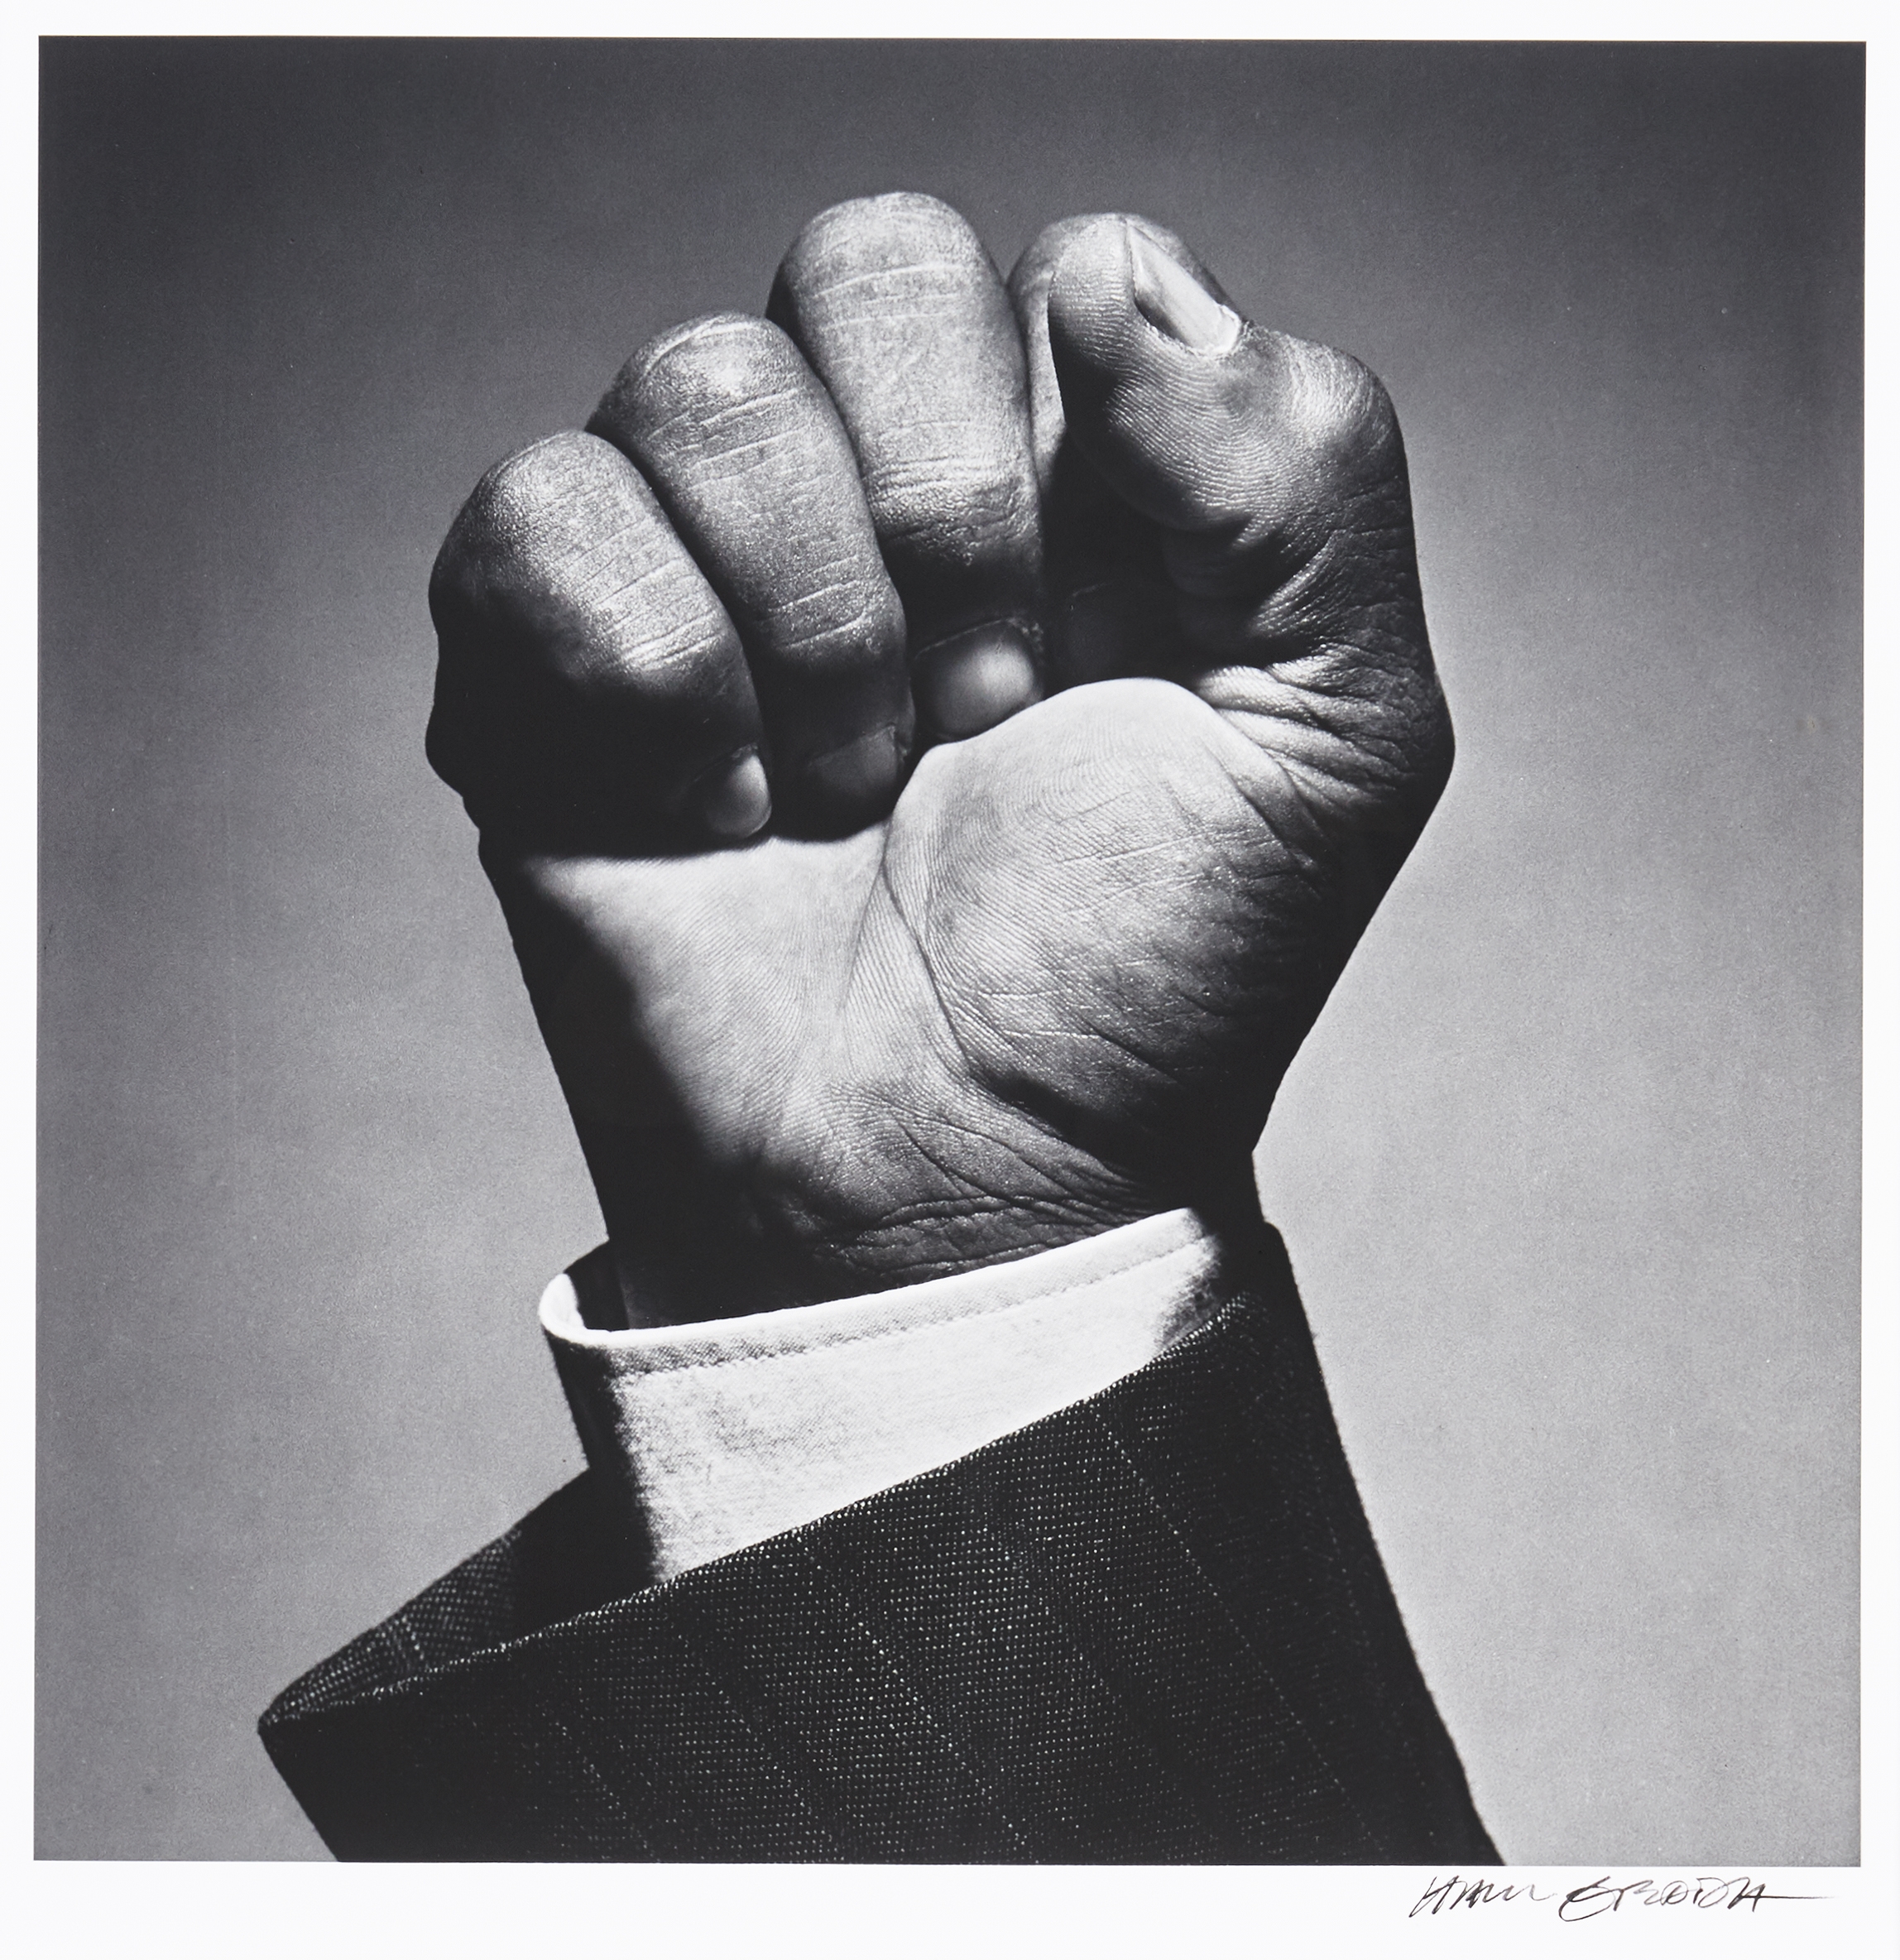 Sign of Freedom - Nelson Mandela by Hans Gedda, 1990